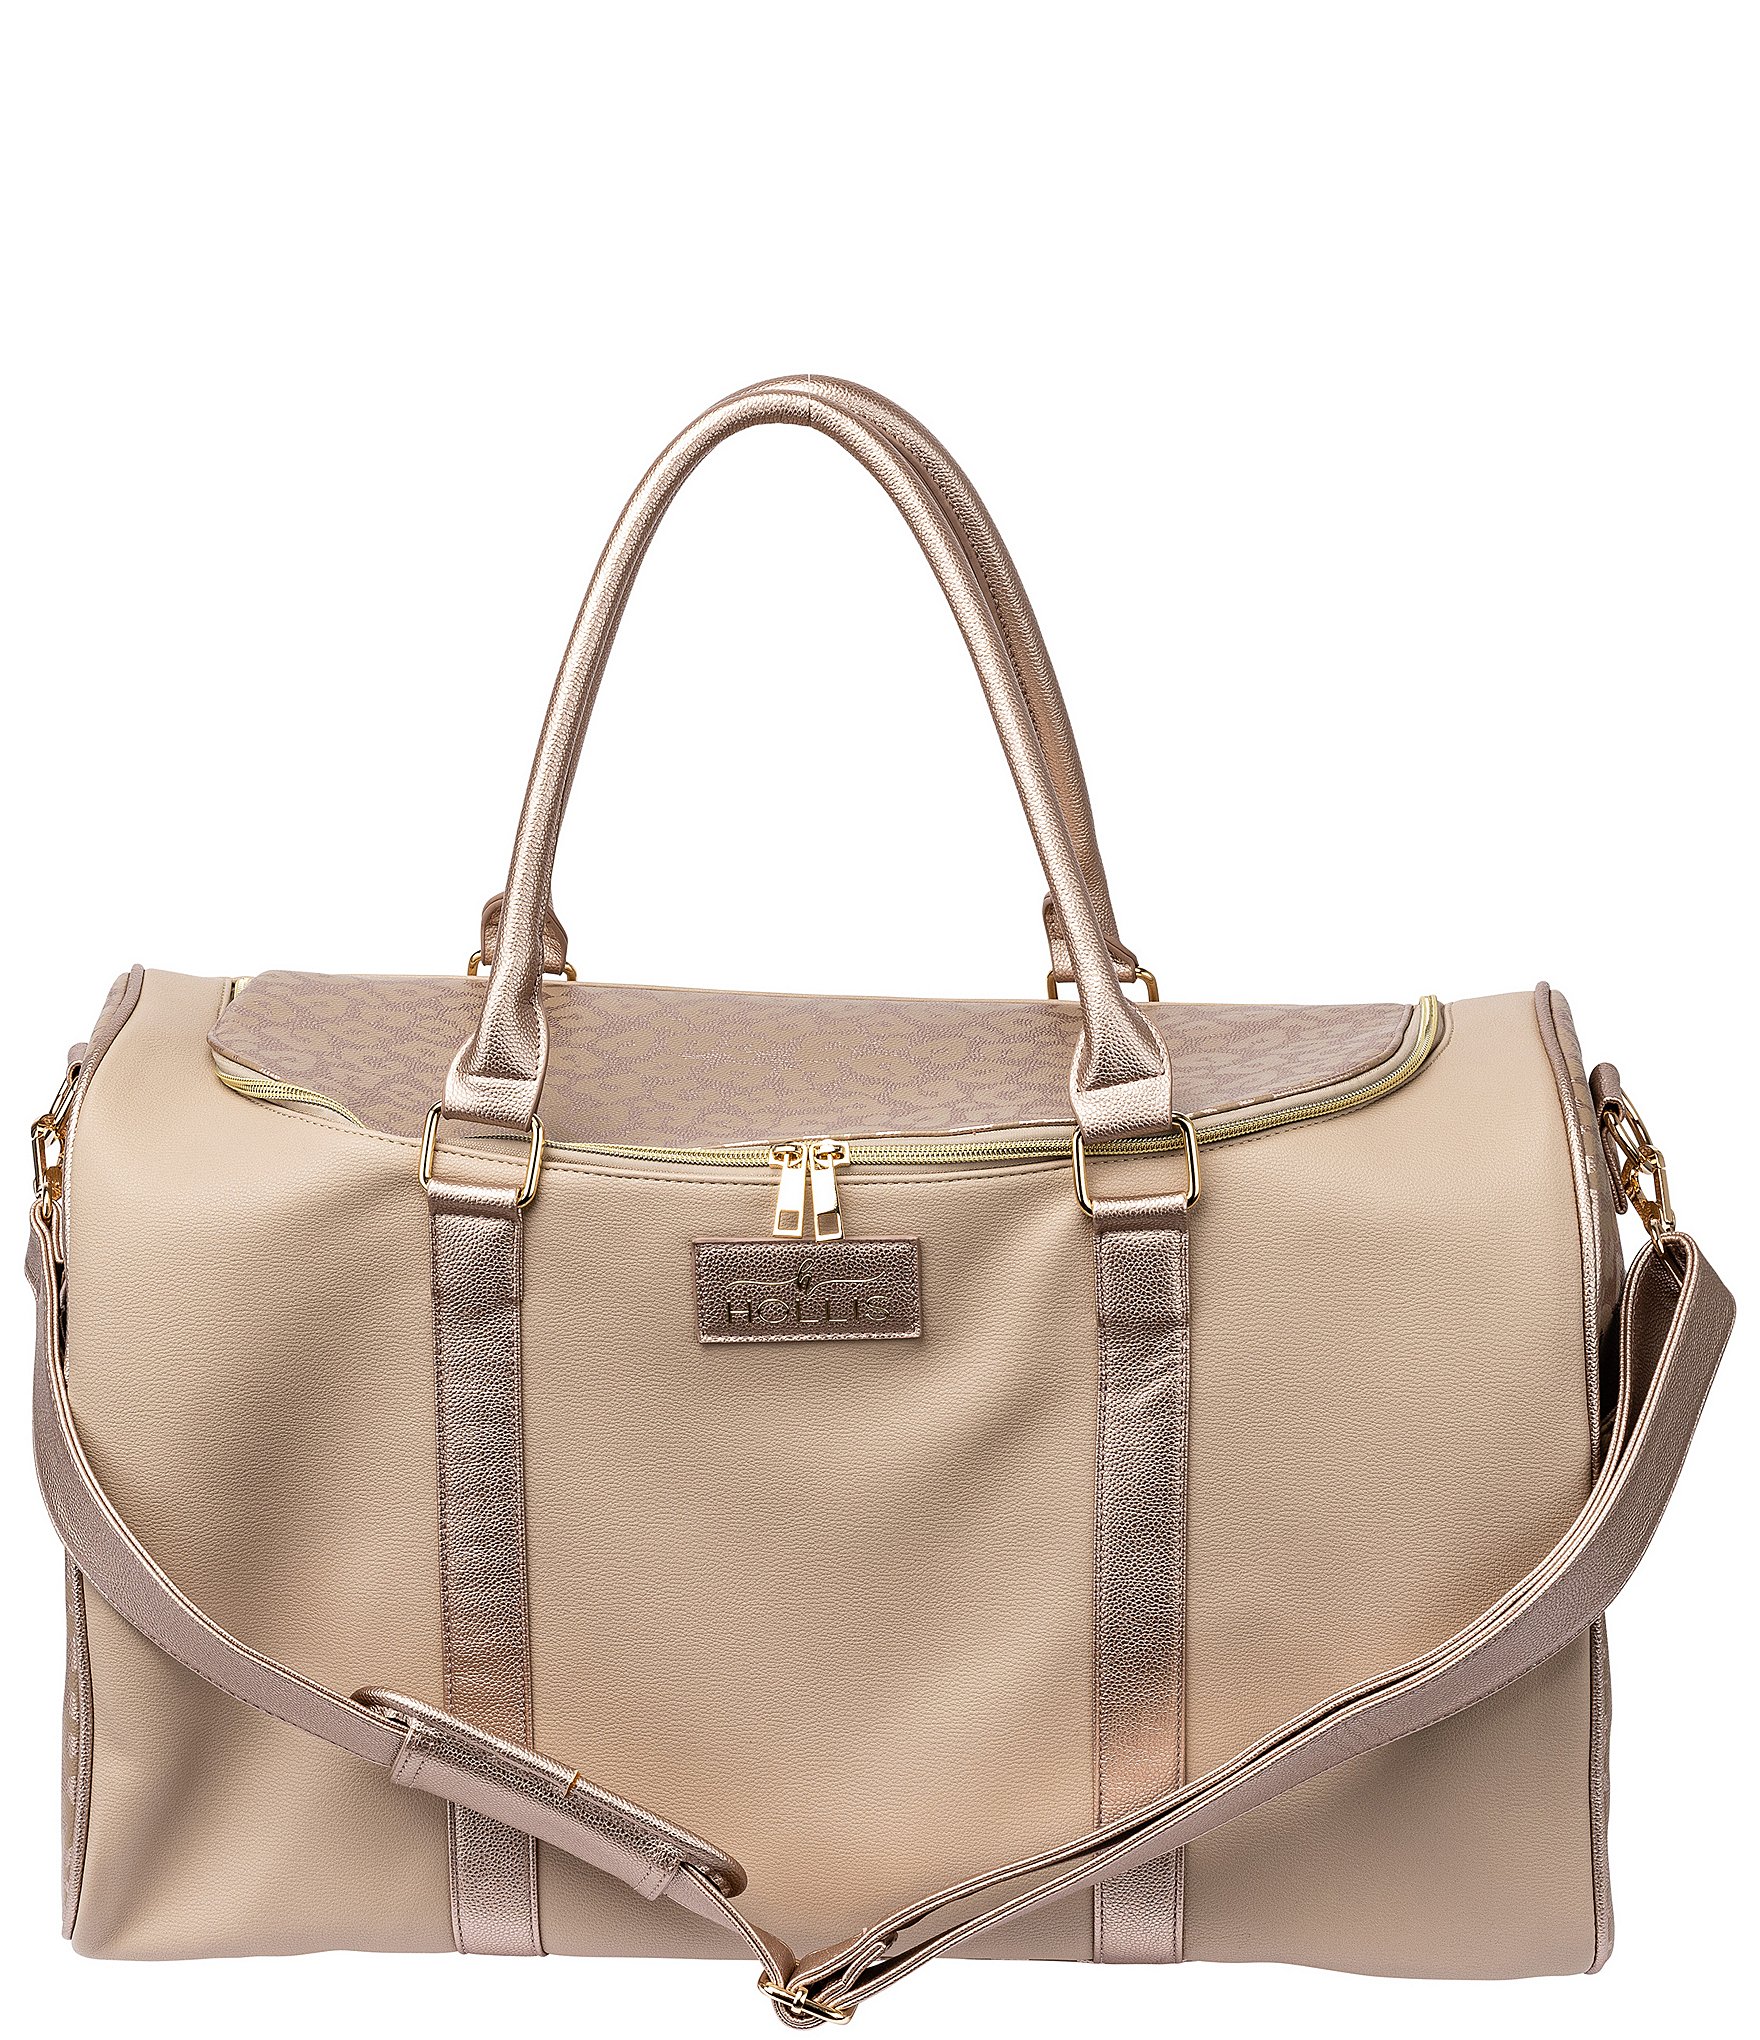 Hollis | Lux Weekender Bag in Solid Blush